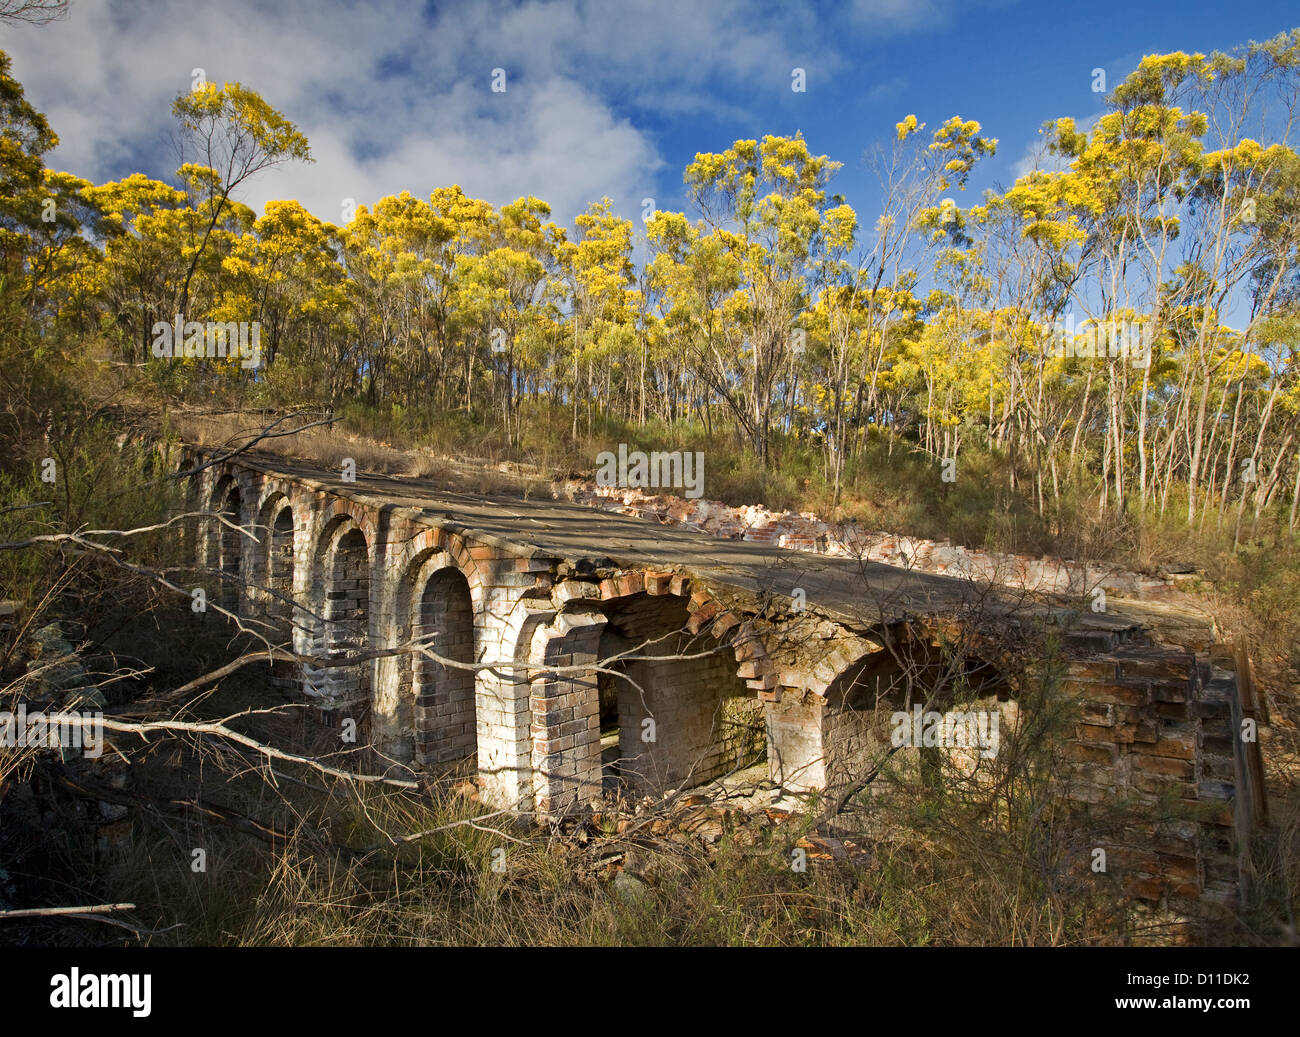 Paysage avec forêt de wattle / acacia arbre avec des fleurs d'or colonisent les ruines de l'ancienne mine d'arsenic Emmaville, NSW Australie Banque D'Images